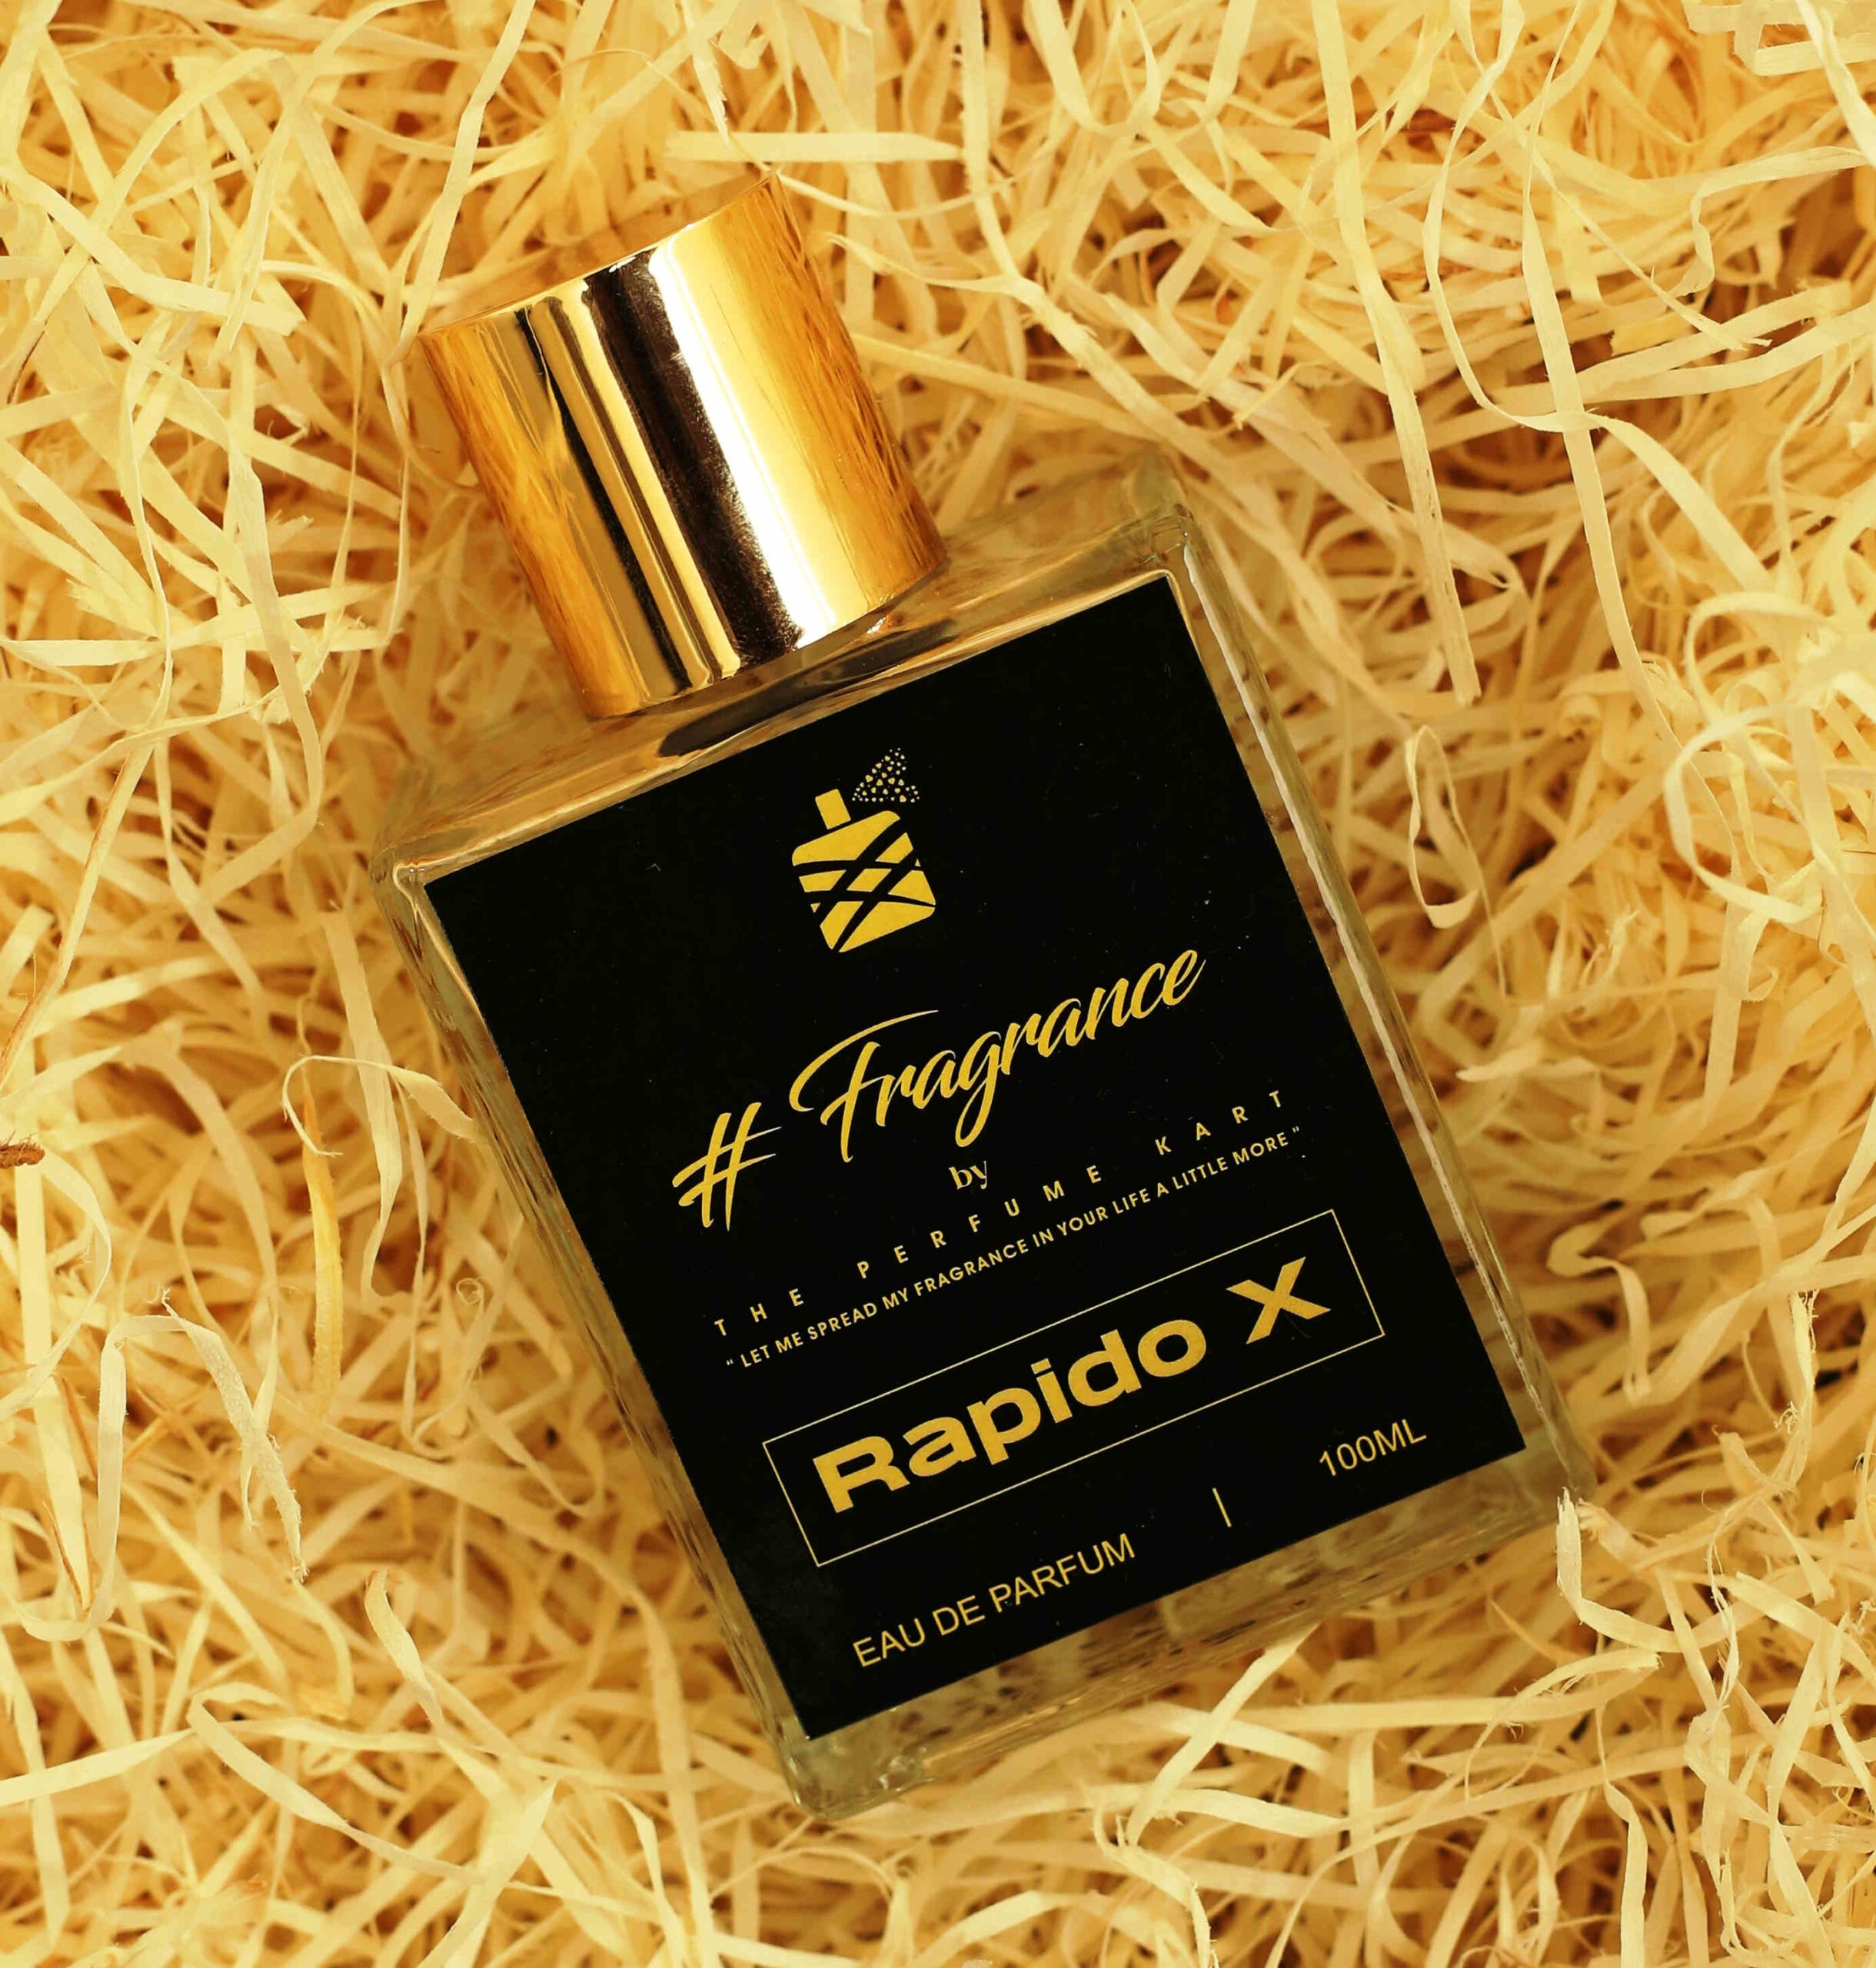 rapido x perfume, rapidx perfume, rapido x, rapidx, perfume for men, perfume for him